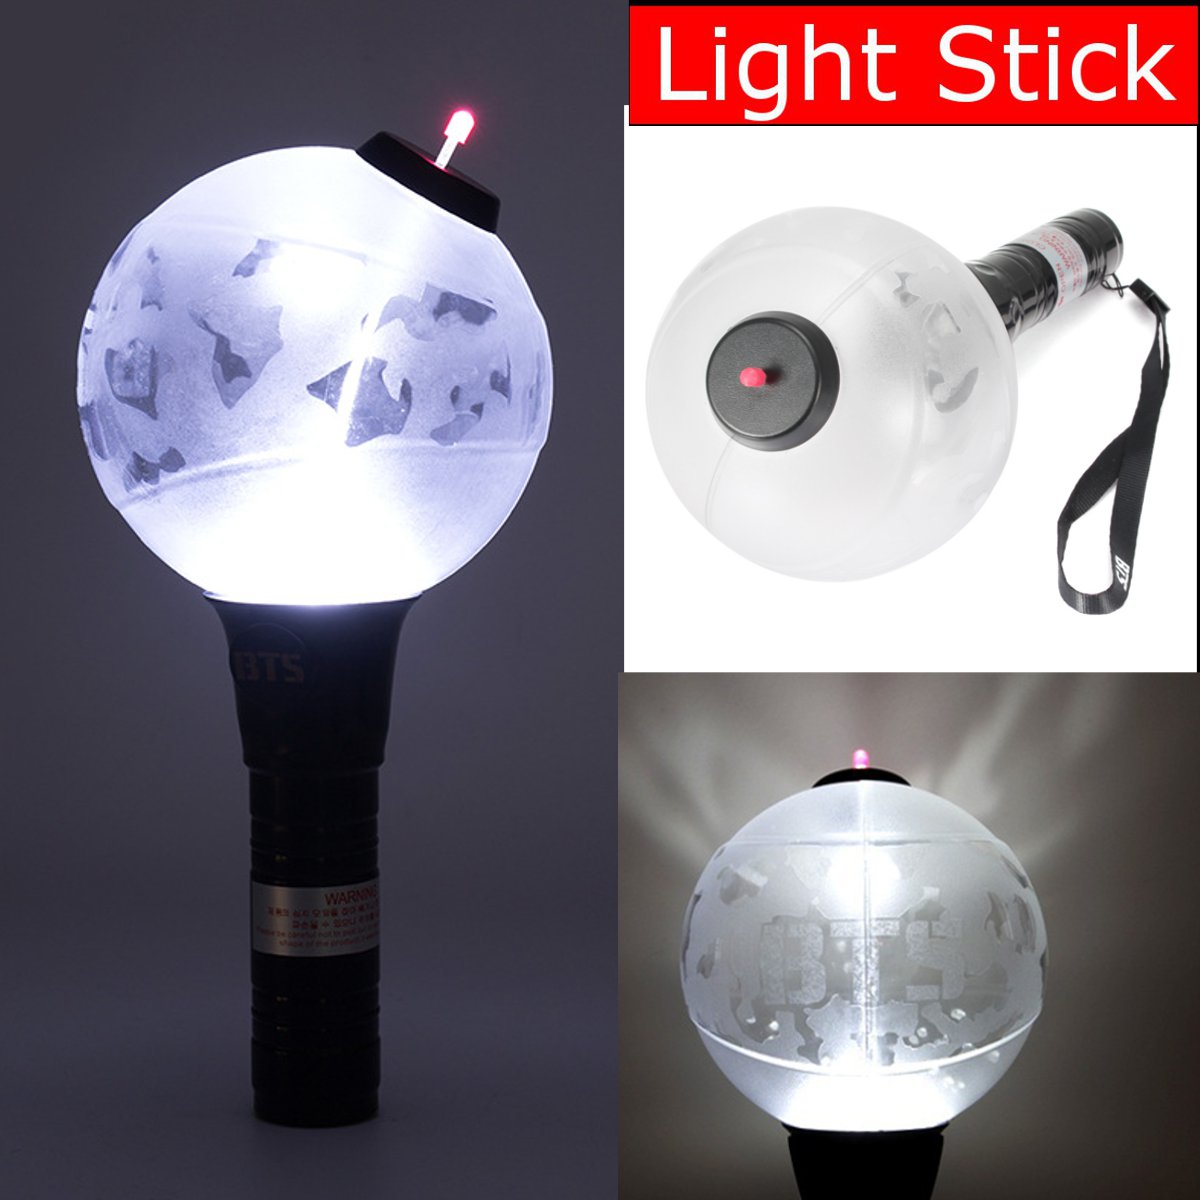 Kpop-BTS-Ver-Bangtan-Boys-Light-Stick-Army-Glow-Lightstick-White-Fluorescent-Light-Lamp-1548257